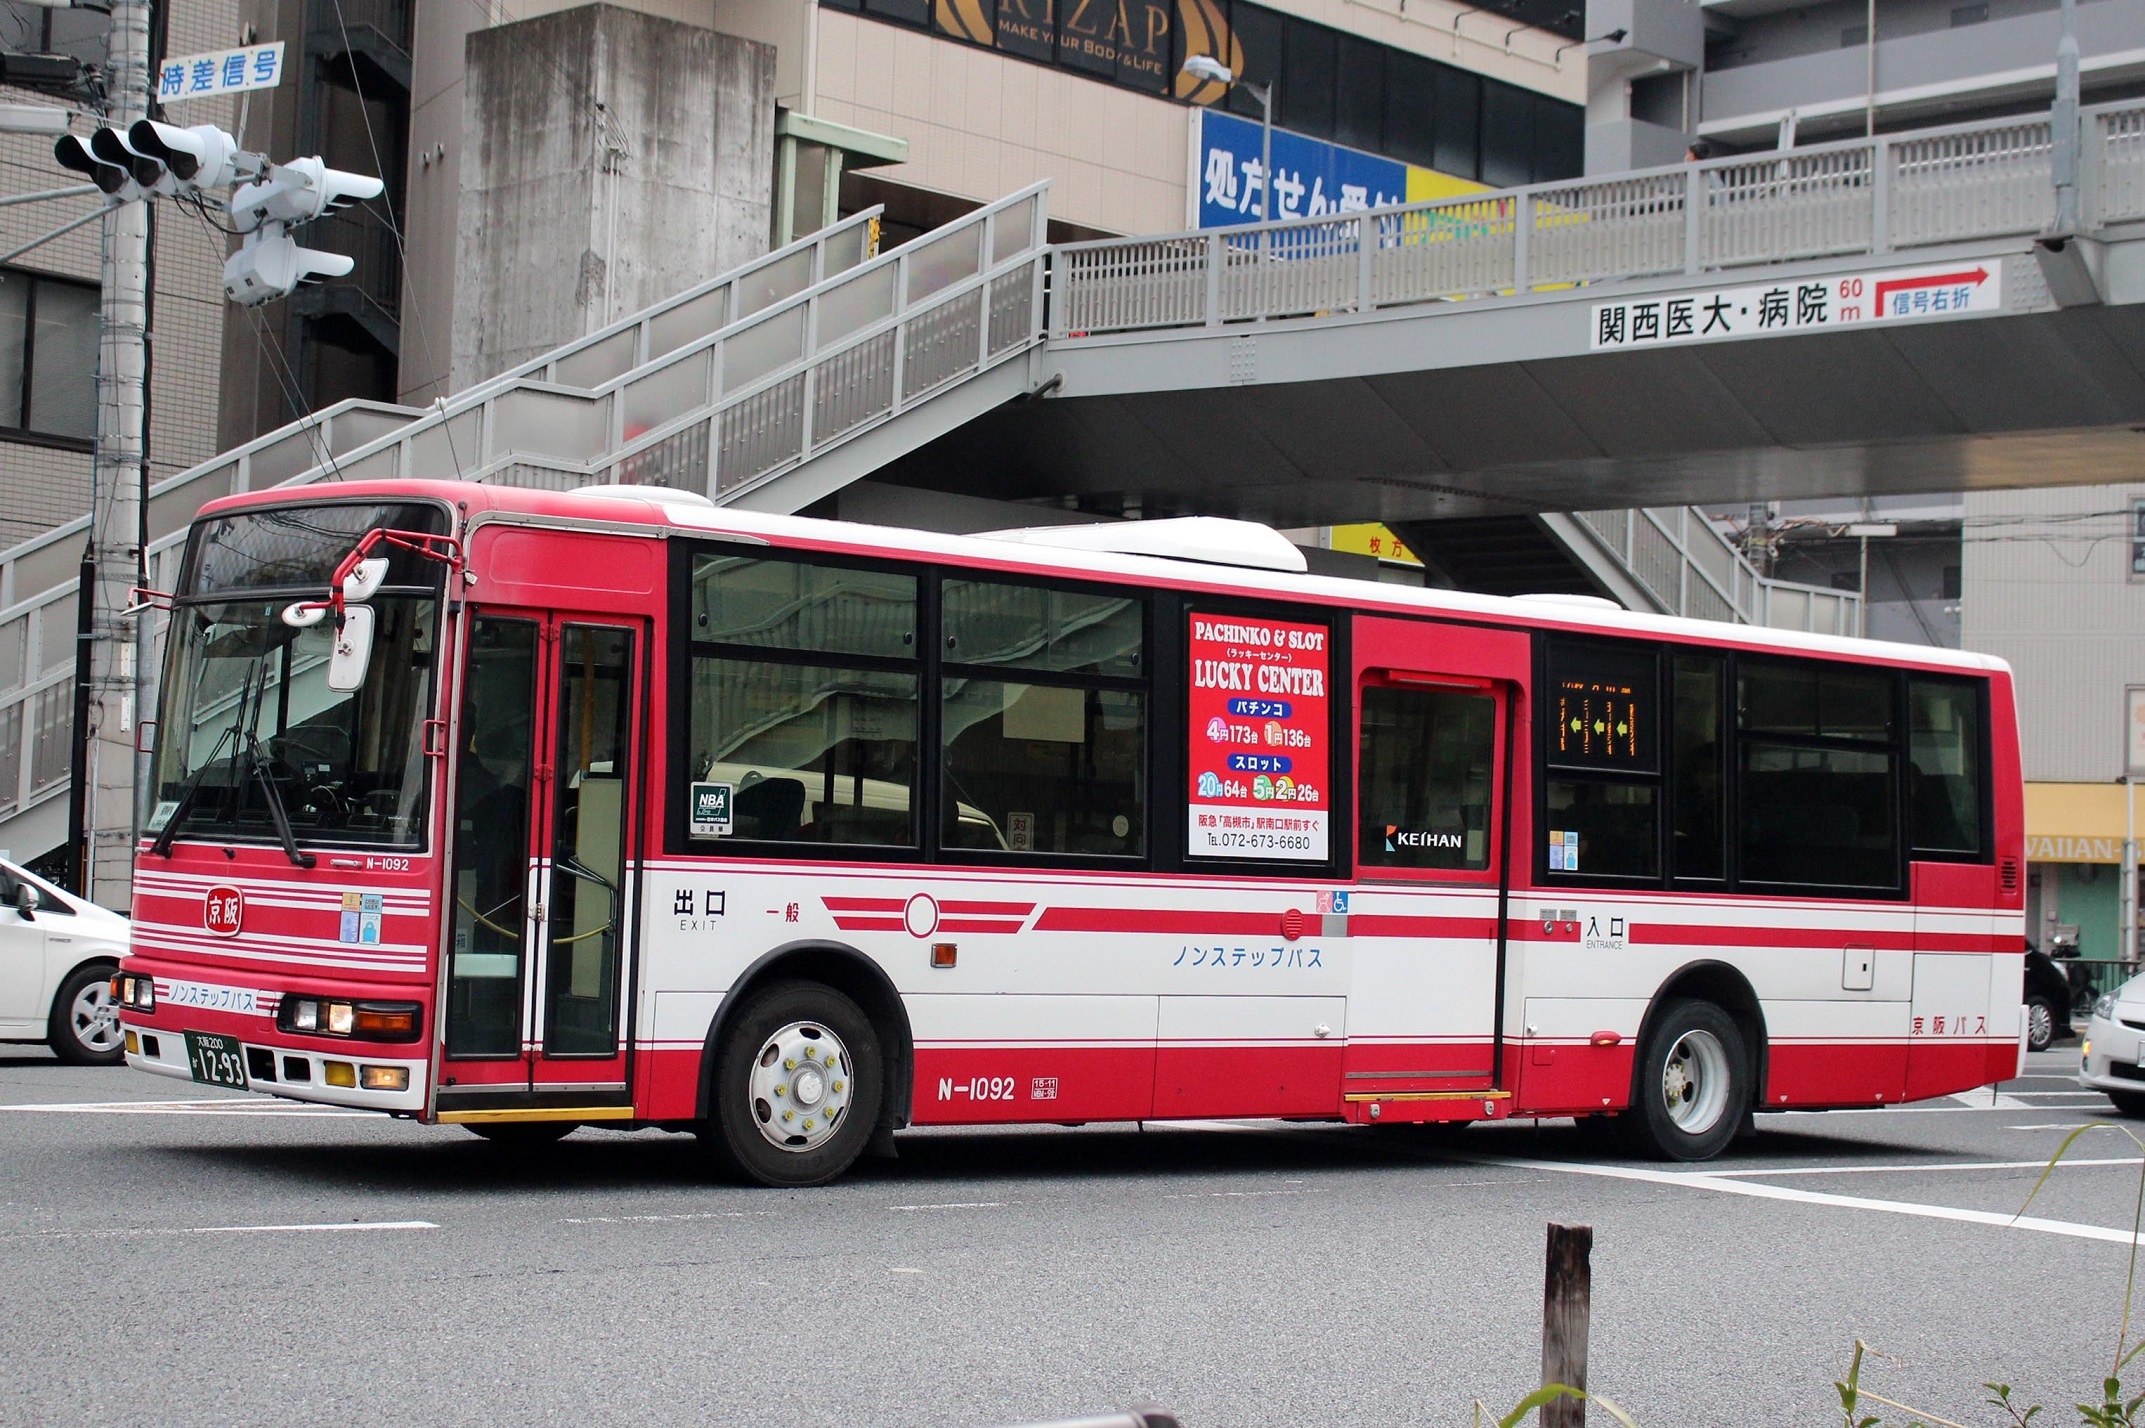 京阪バス N-1092